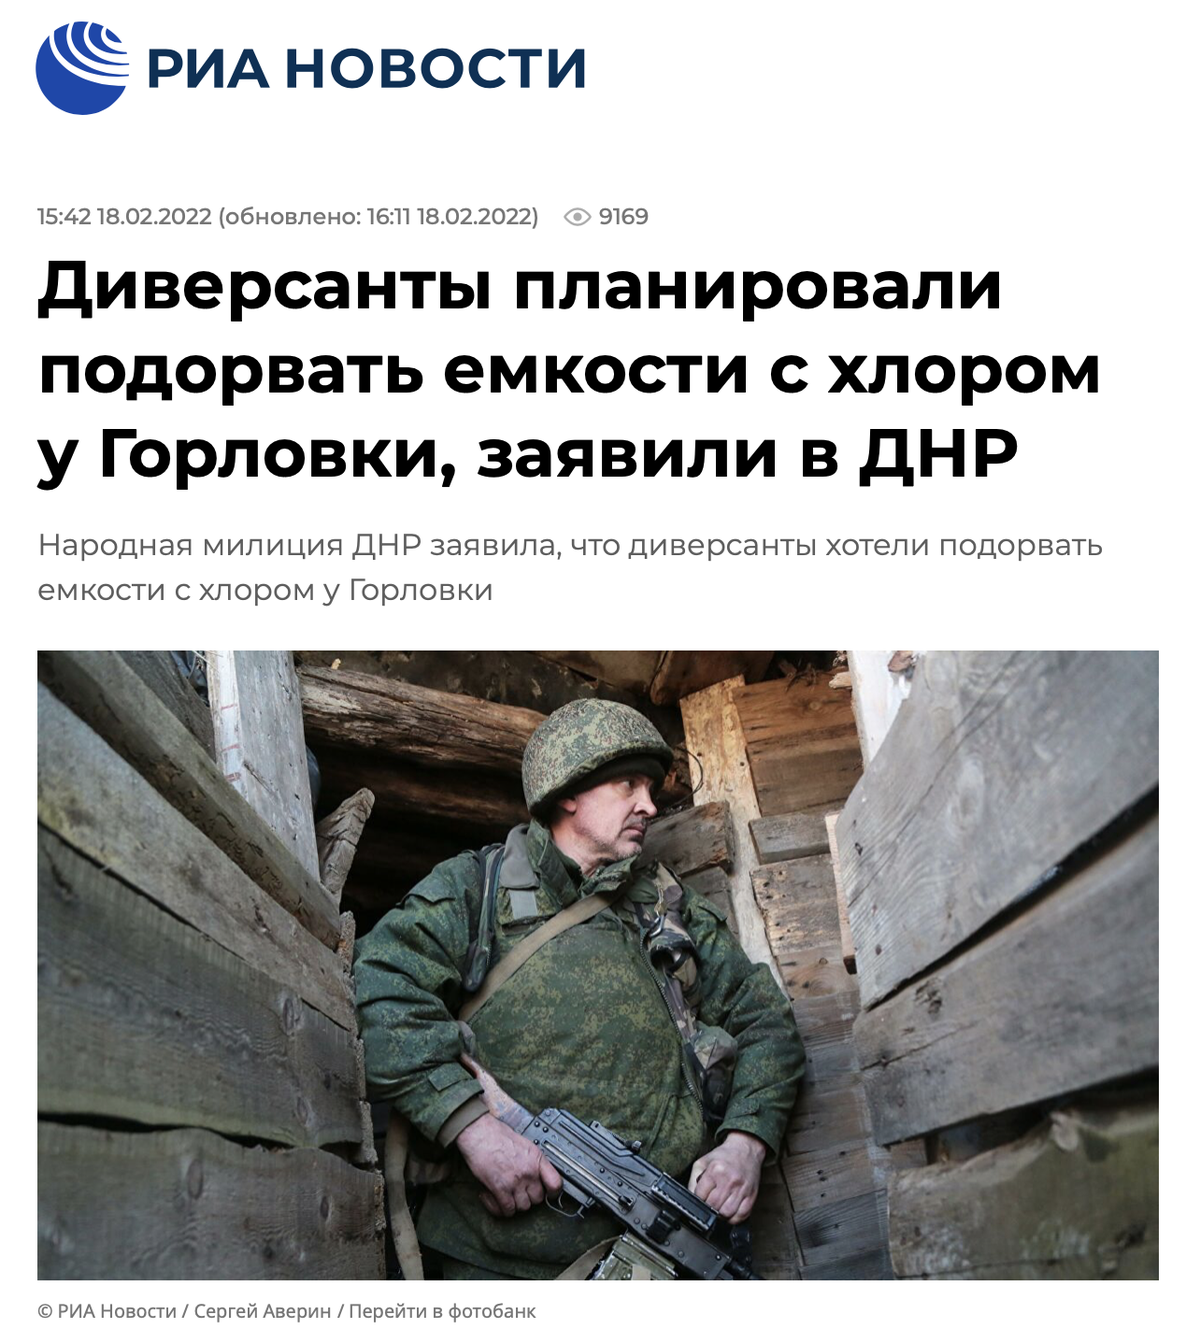 Новость российского государственного информационного агентства о происшествии, которое, скорее всего, было сфабриковано